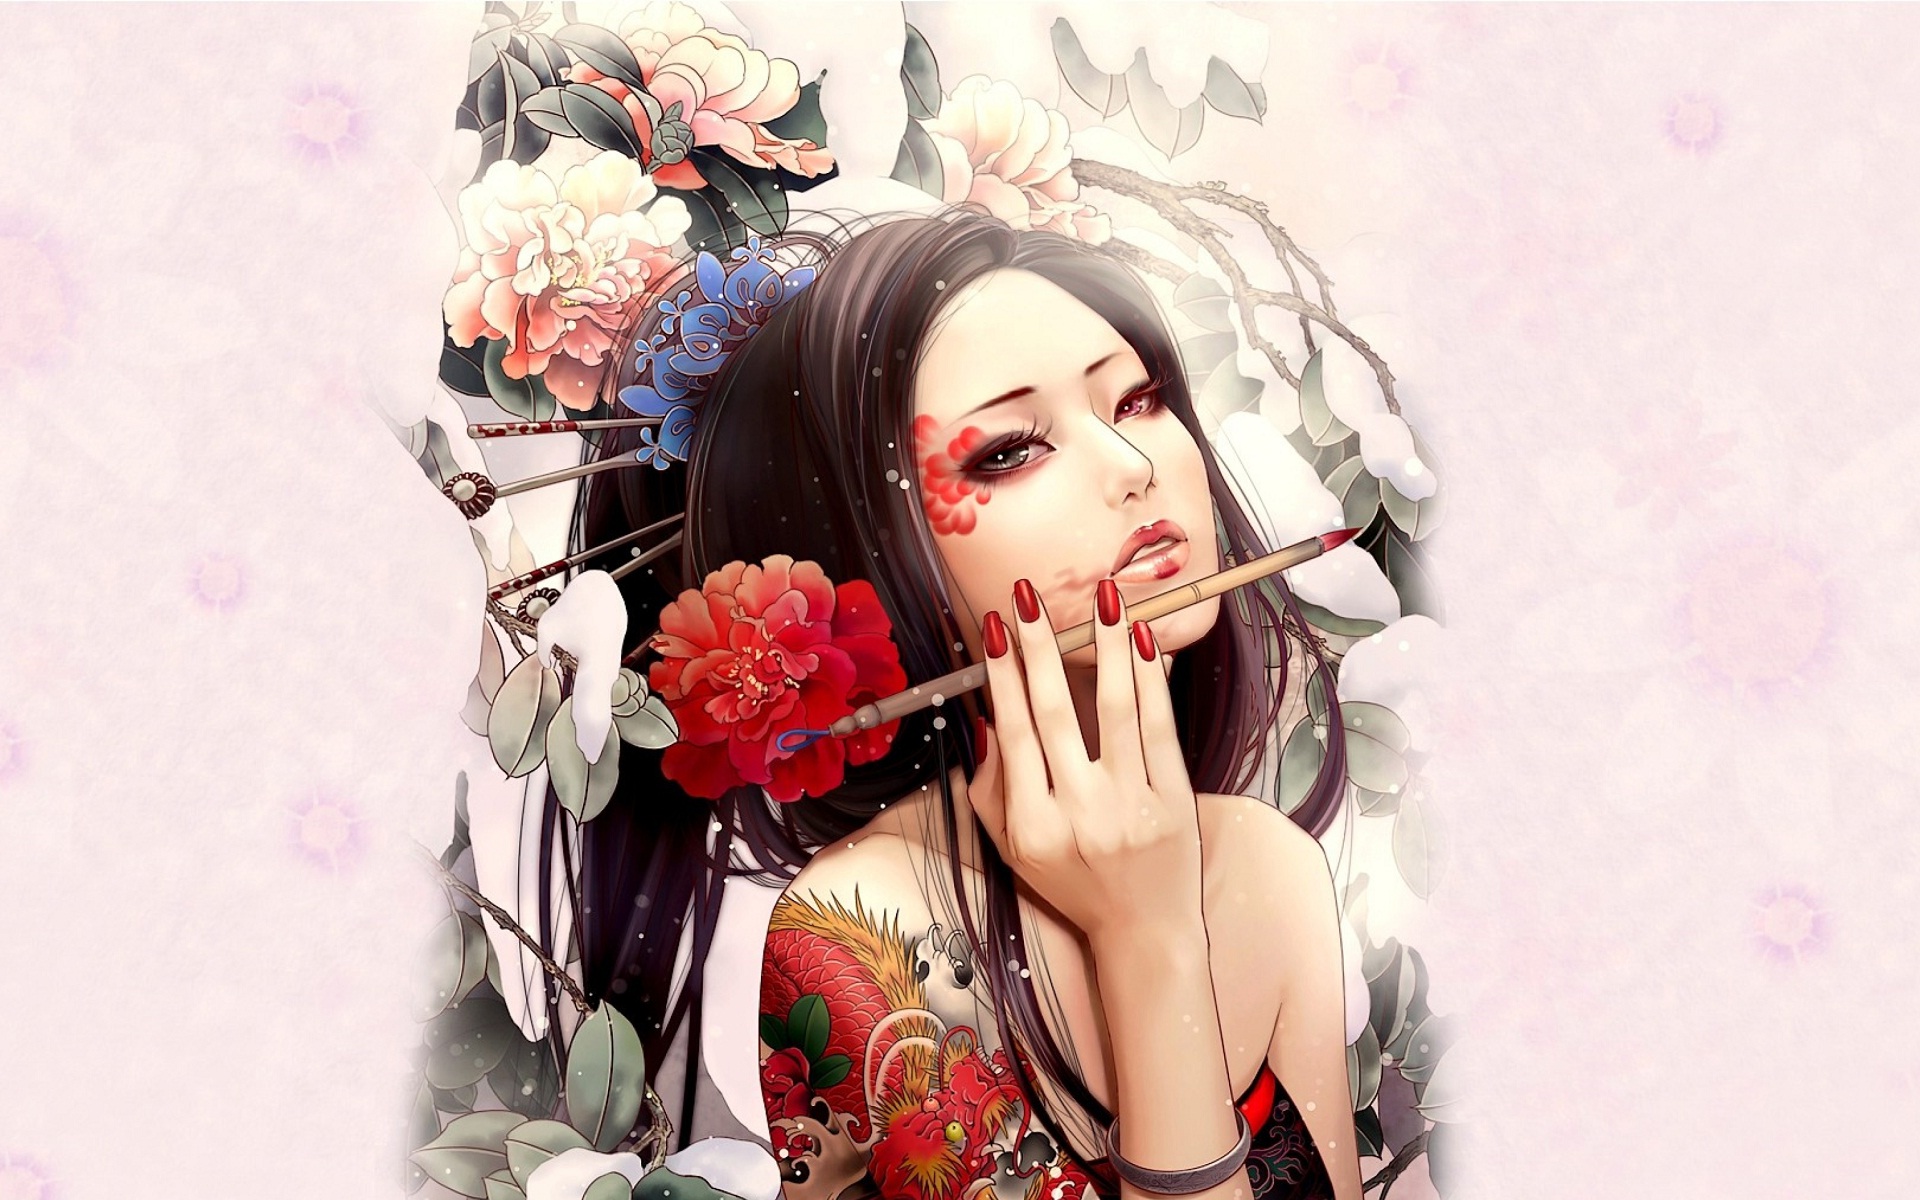 Fantasy Girl by Zhang Xiao Bai